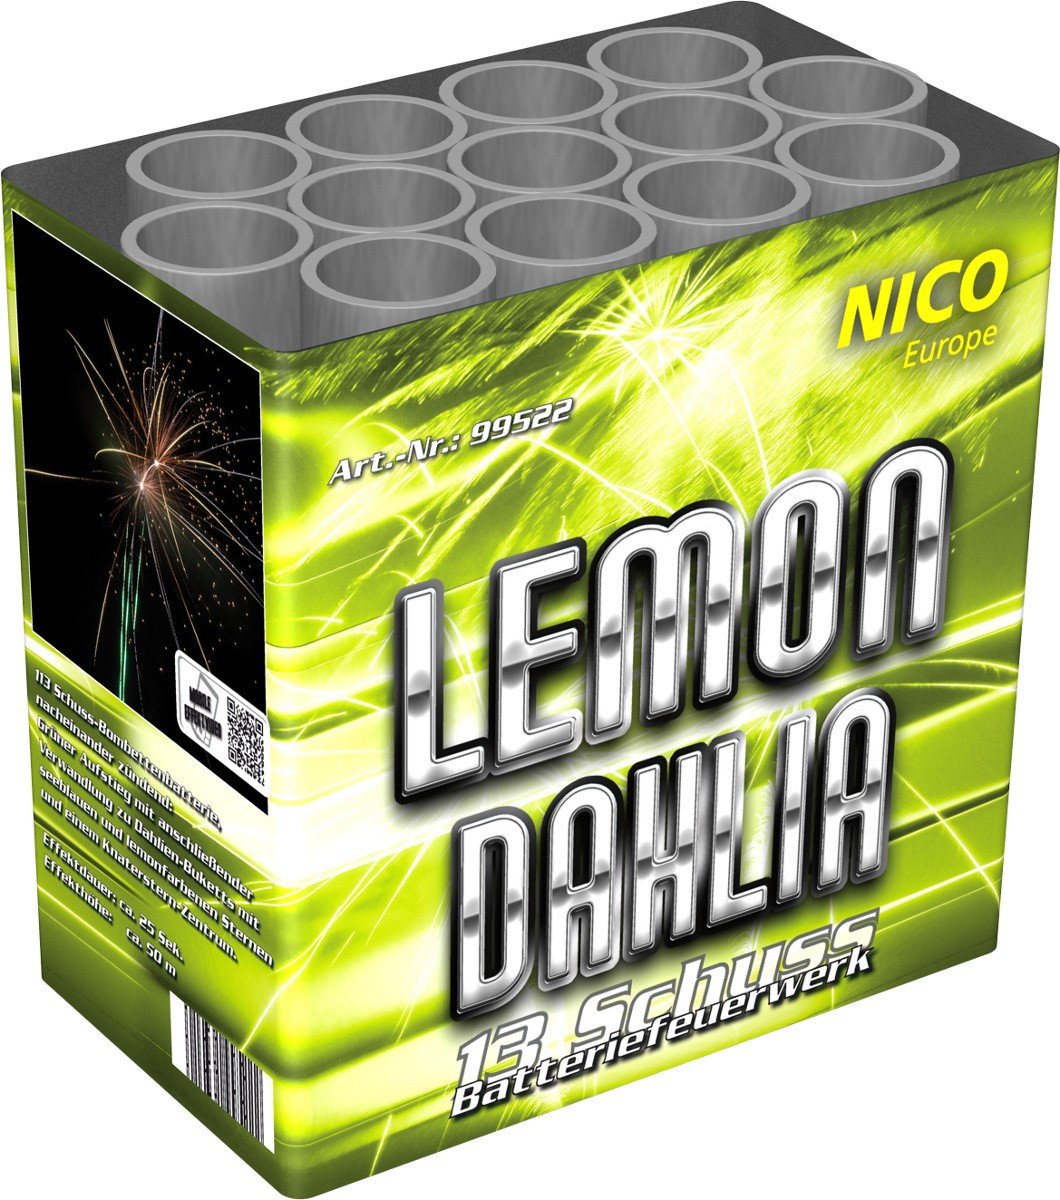 Feuerwerkbatterie Lemon Dahlia 13 Schuss